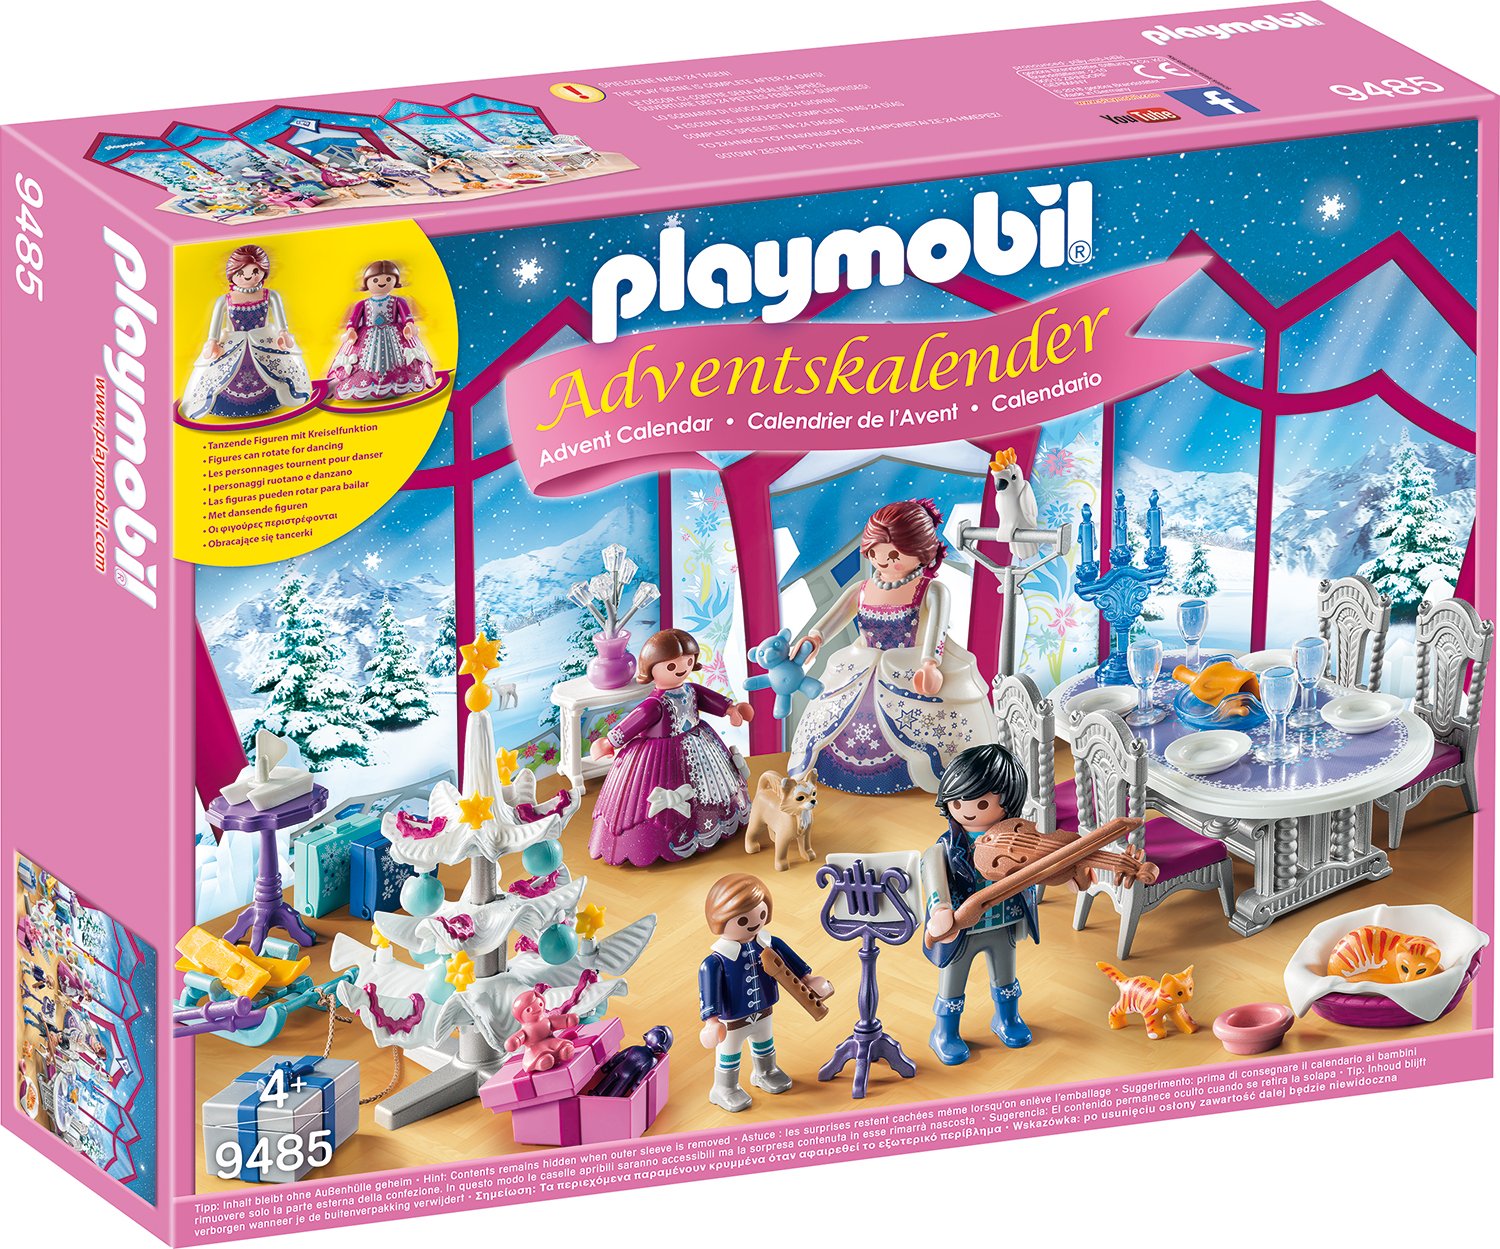 Playmobil Christmas Ball In The Crystal Ballroom